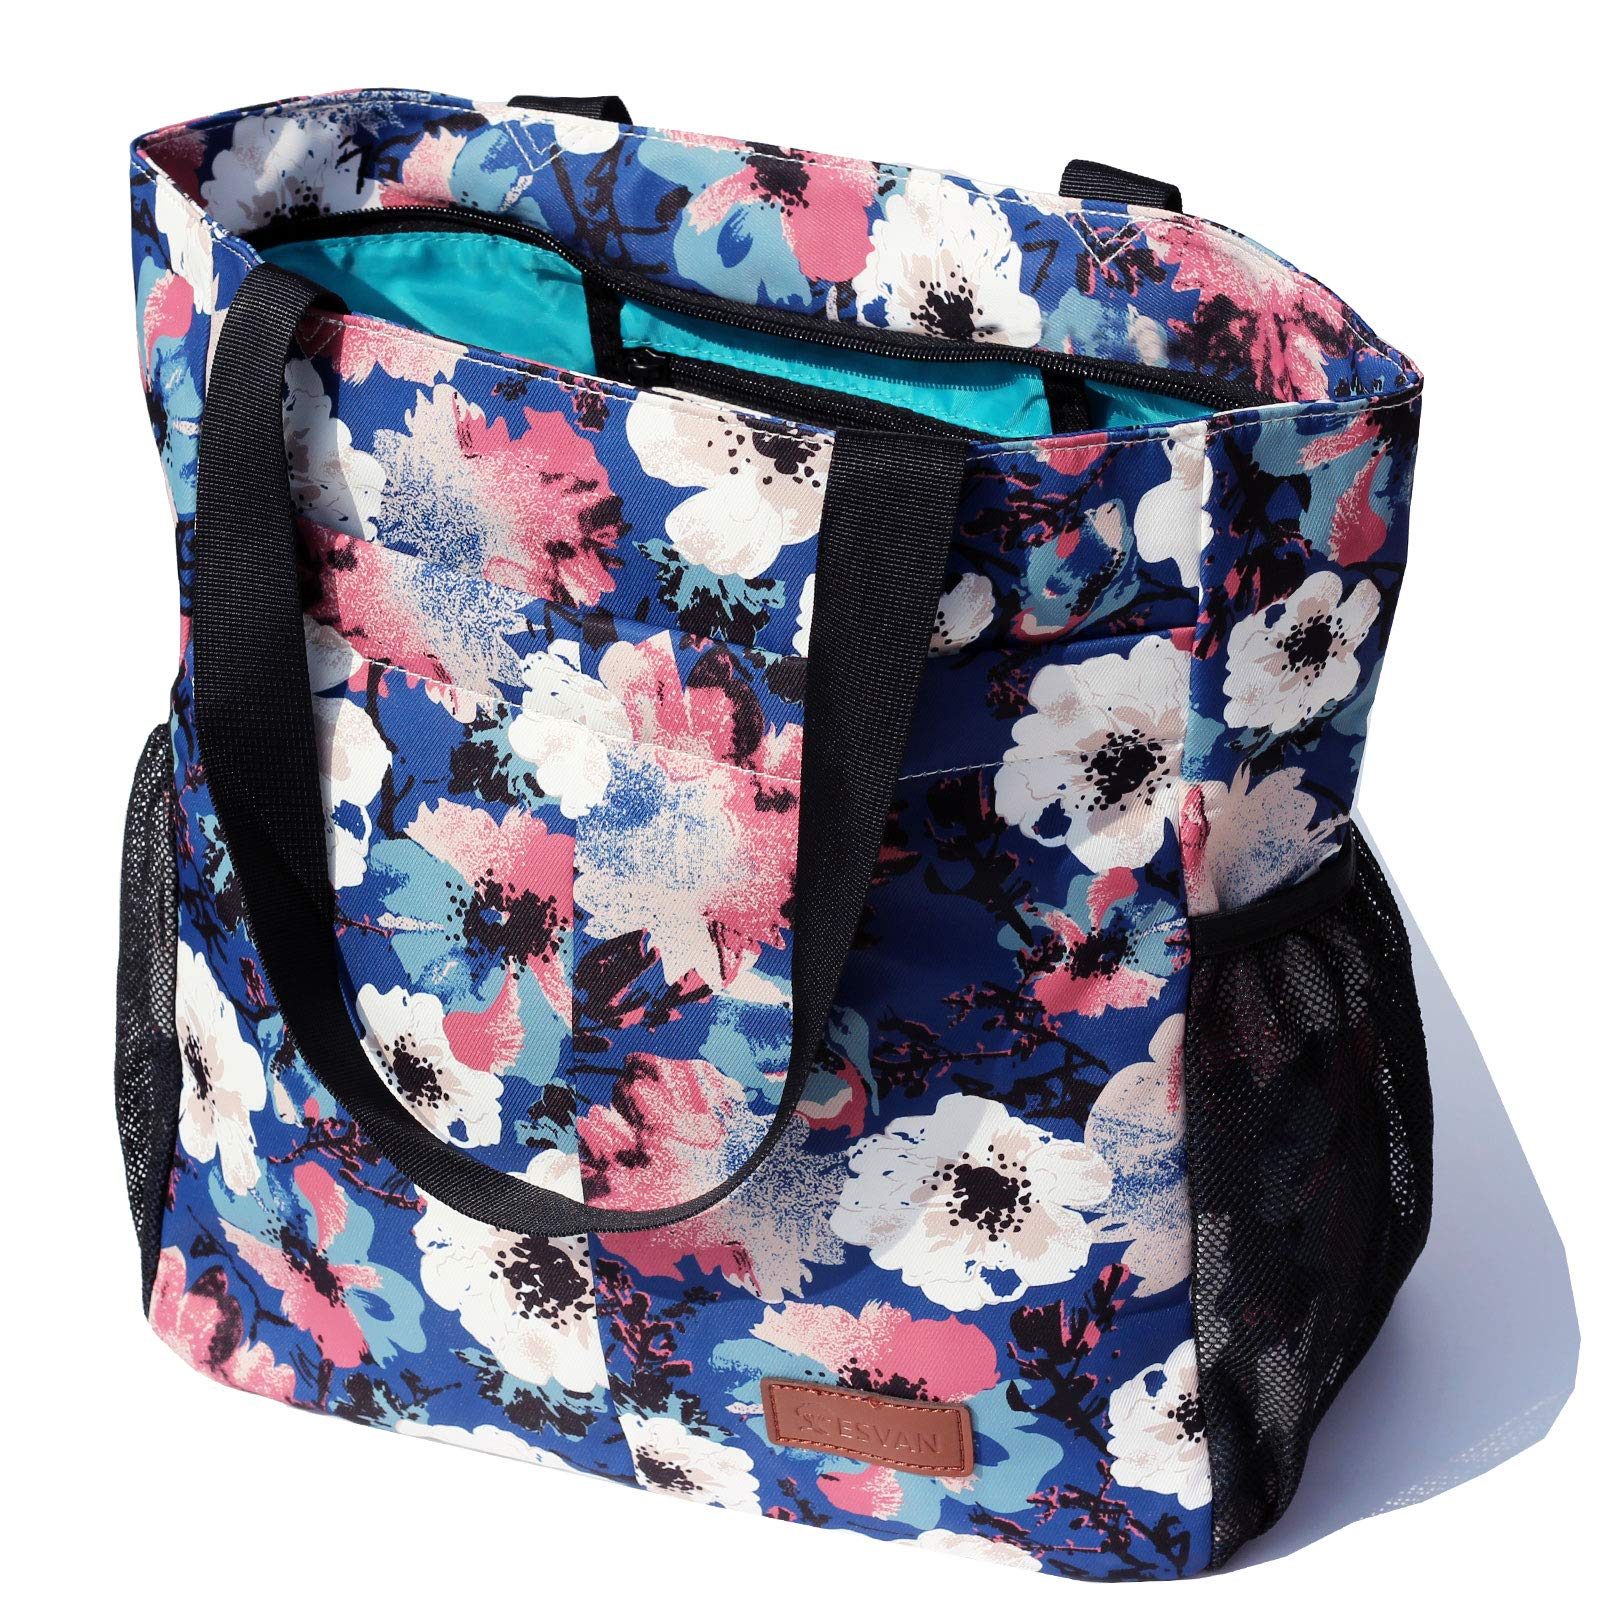 ESVAN Original Floral Tote Bag Große Umhängetasche mit Multi Taschen für Gym Reise Strand Täglich Taschen, weiße blumen, One_Size, modisch